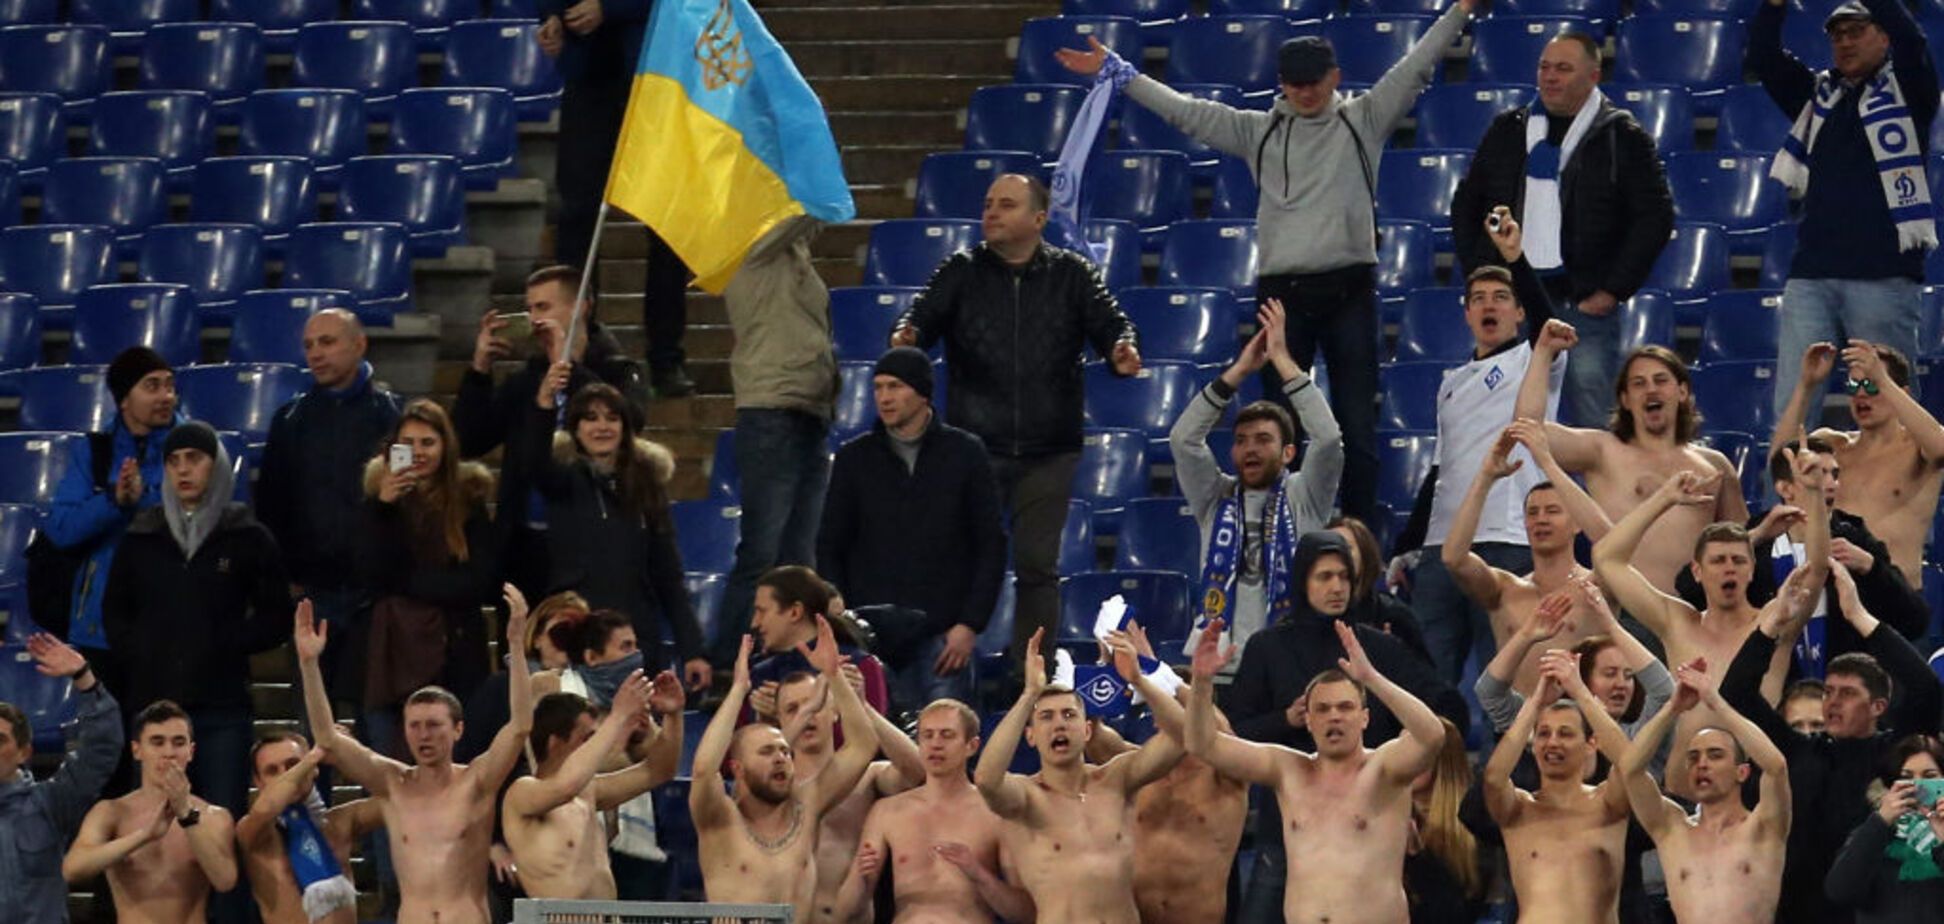 Фанати 'Динамо' з прапором України викликали фурор у Римі на матчі з 'Лаціо': опубліковано фото